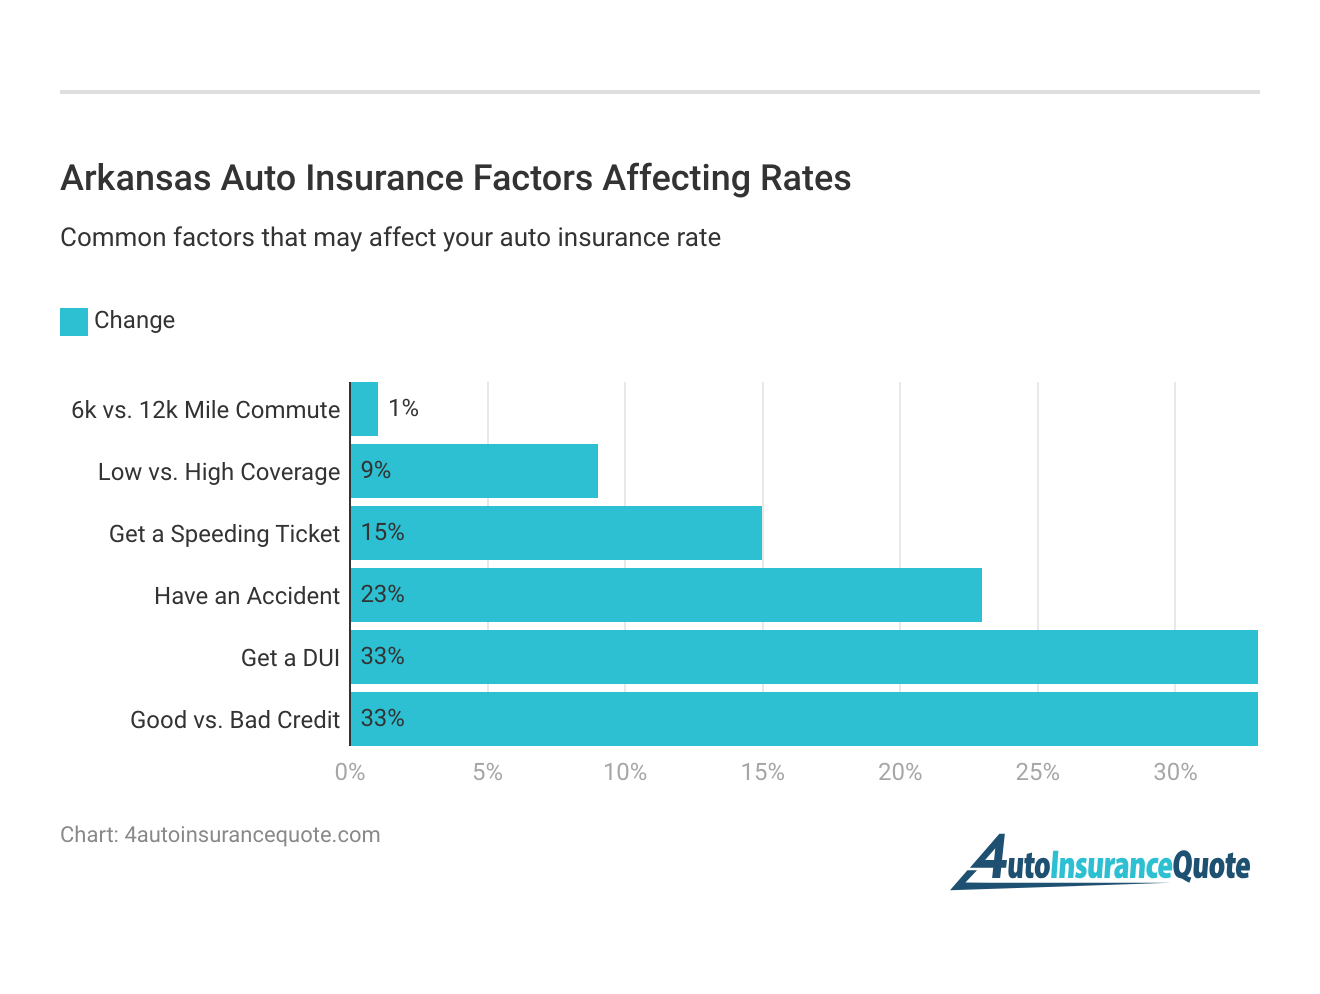 <h3>Arkansas Auto Insurance Factors Affecting Rates</h3>